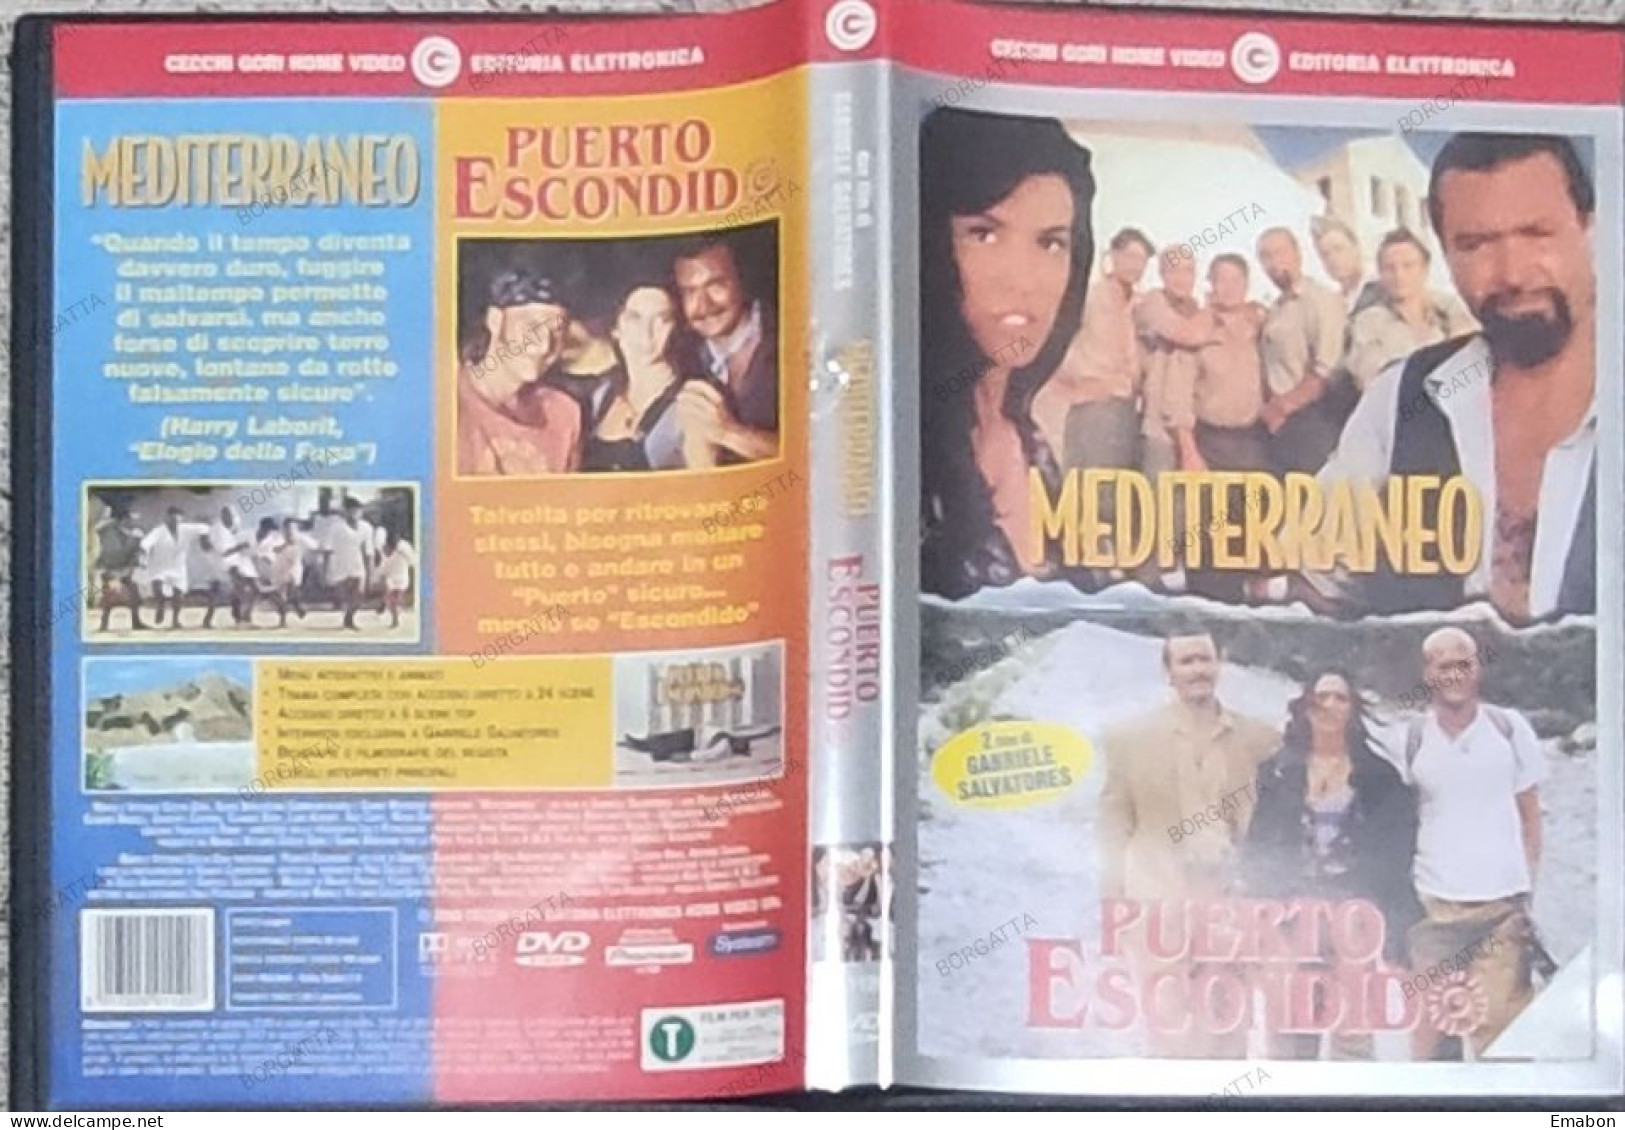 BORGATTA - COMMEDIA - DVD MEDITERRANEO + PORTO ESCONDIDO - GABRIELE SALVATORES - CECCHI GORI 2000 - USATO In Buono Stato - Commedia